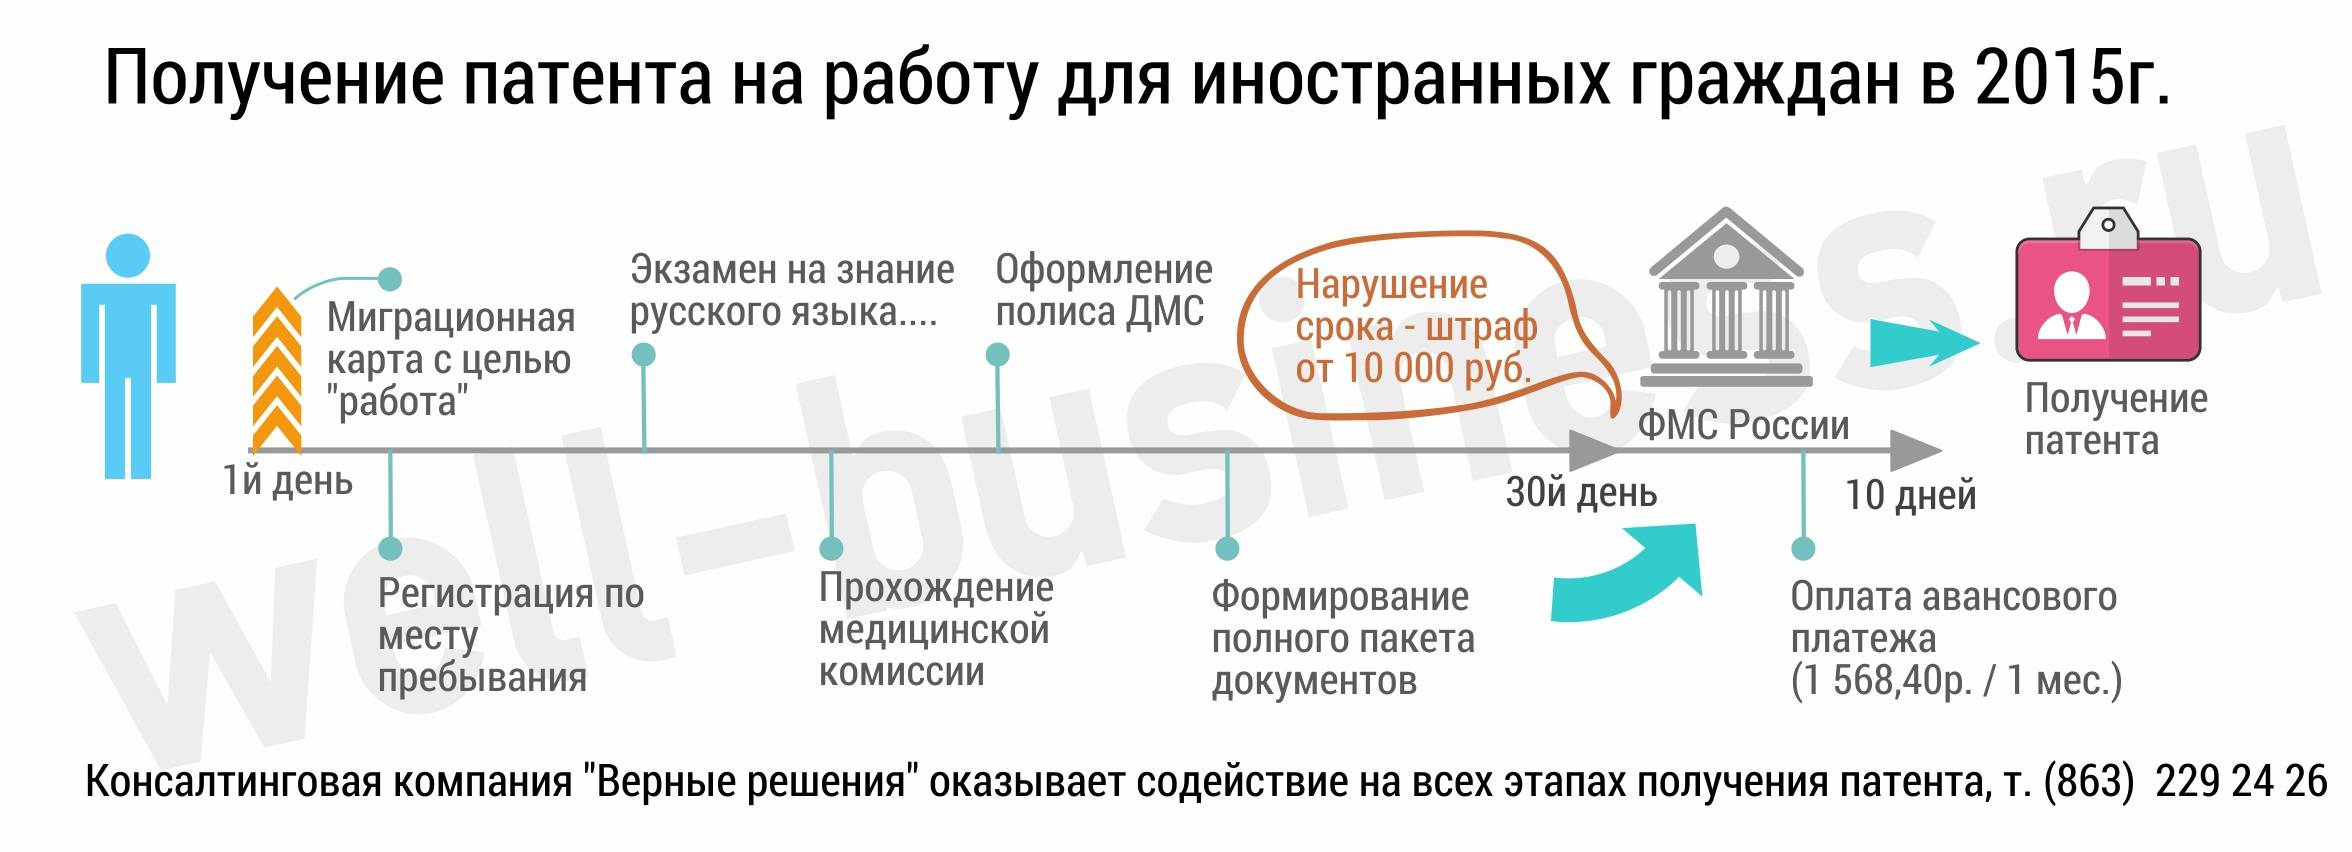 Можно ли взять ипотеку иностранному гражданину в россии: какие банки дают, условия кредитования